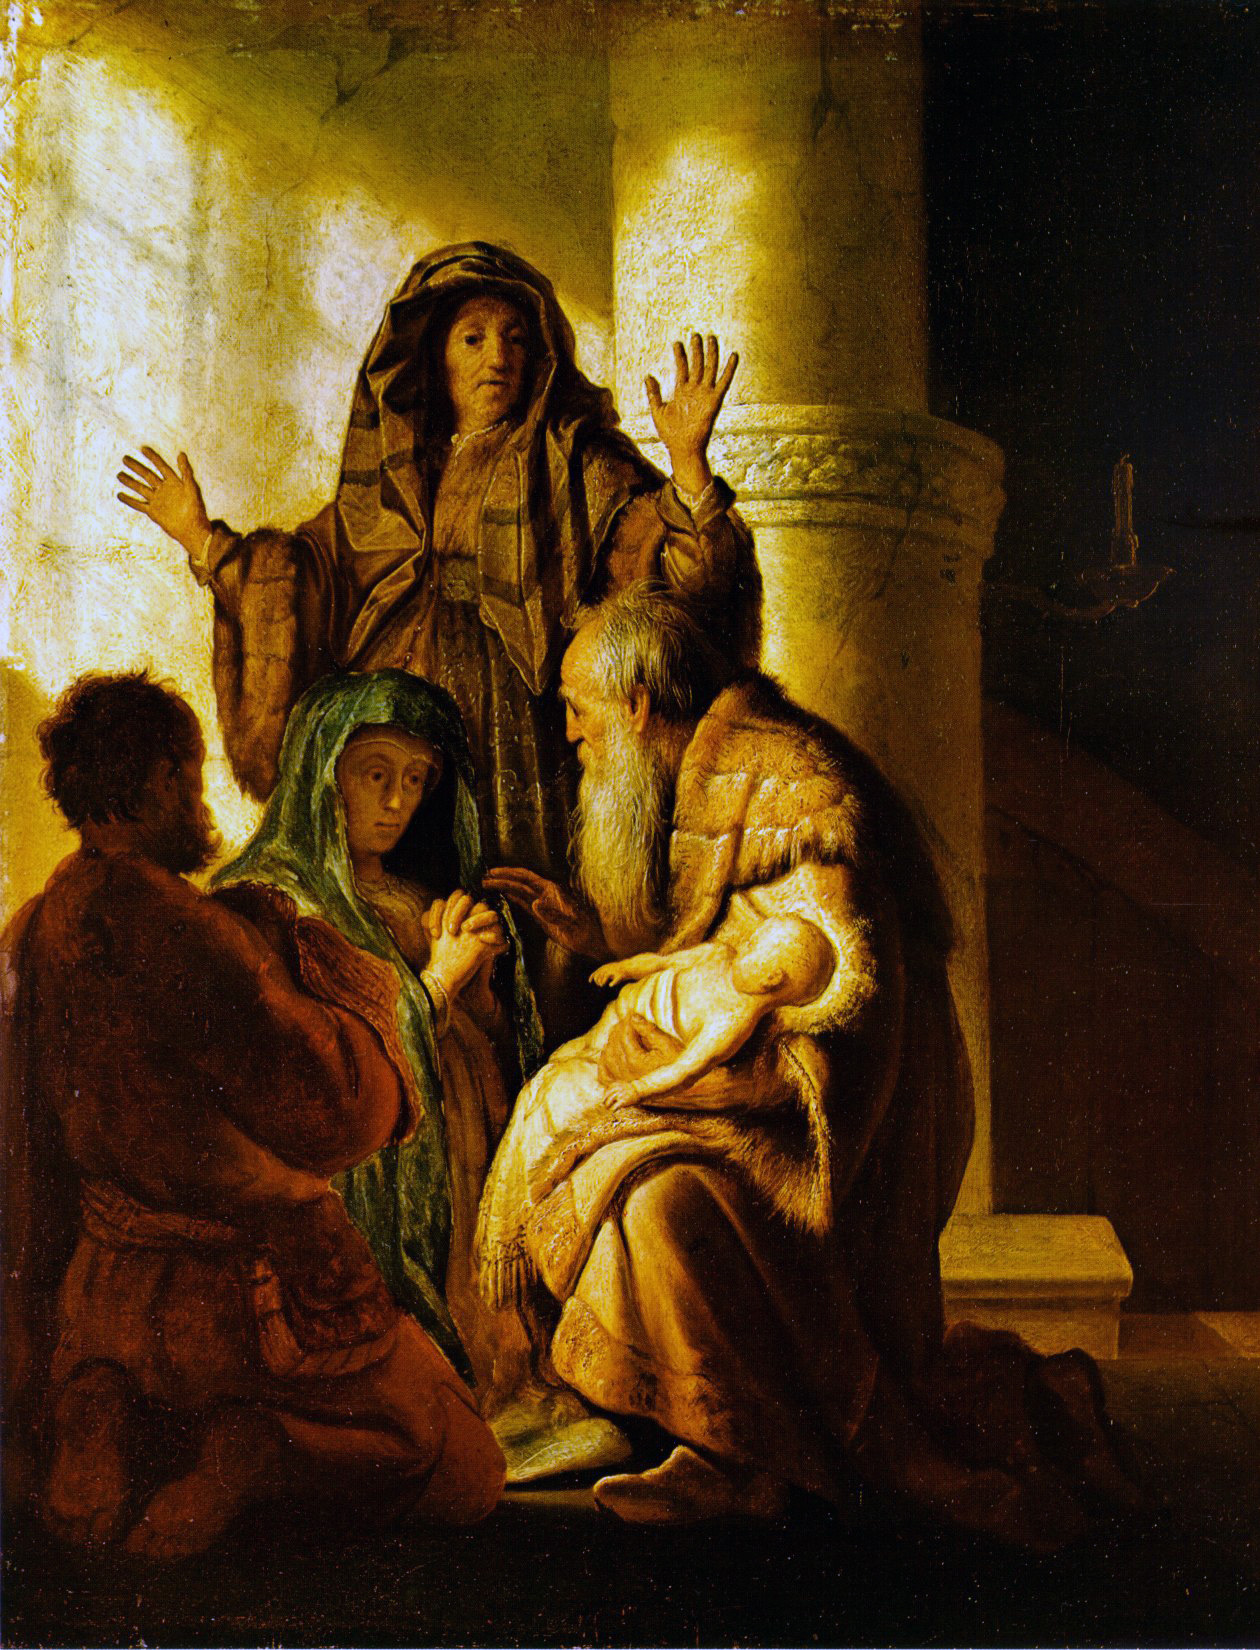 Рембрандт Харменс ван Рейн. "Принесение во храм". 1627-1628. Музей искусства, Гамбург.